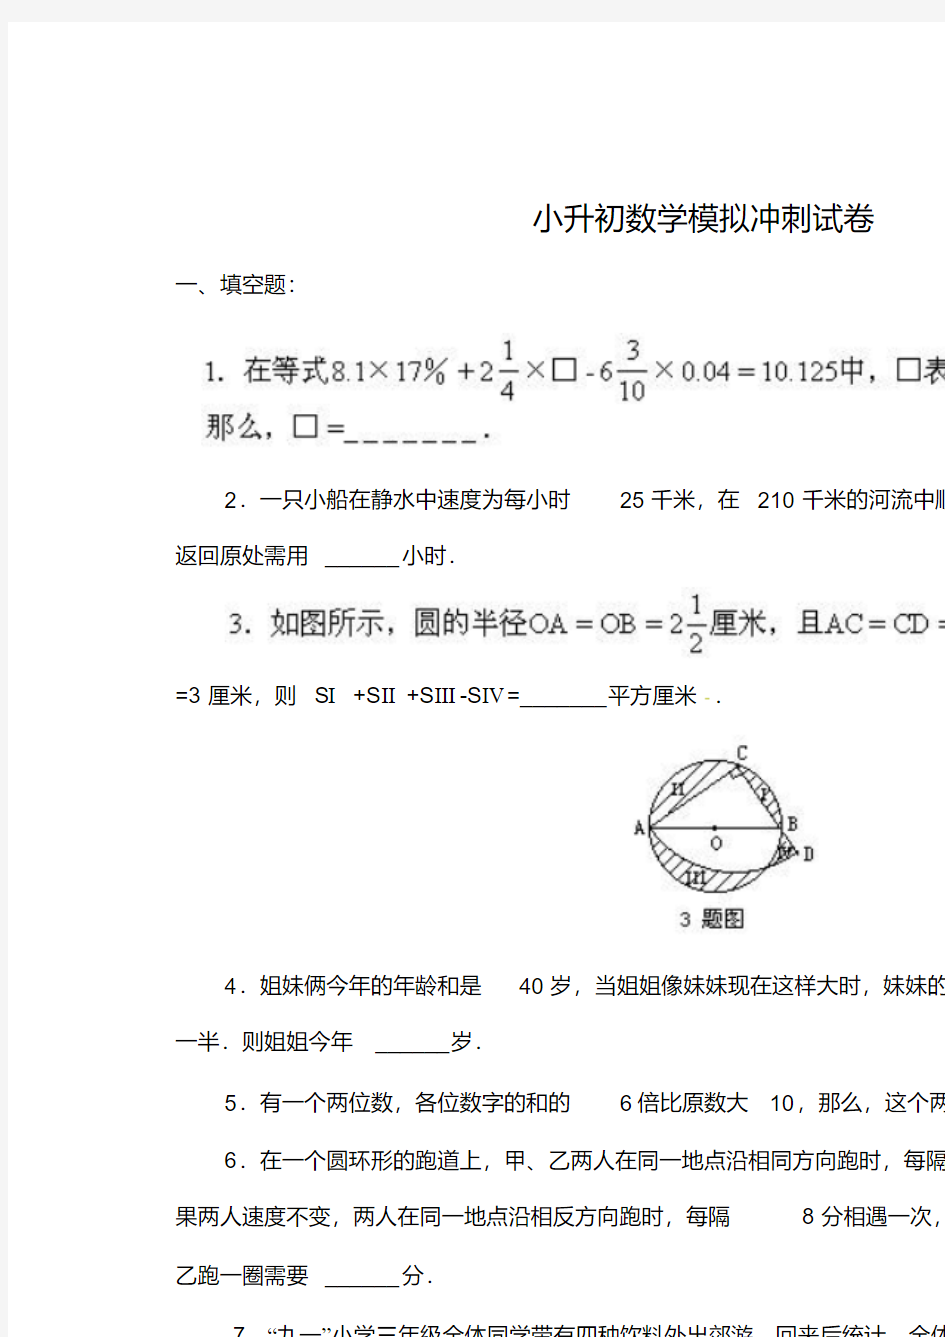 名校小升初数学真题合集(7).pdf